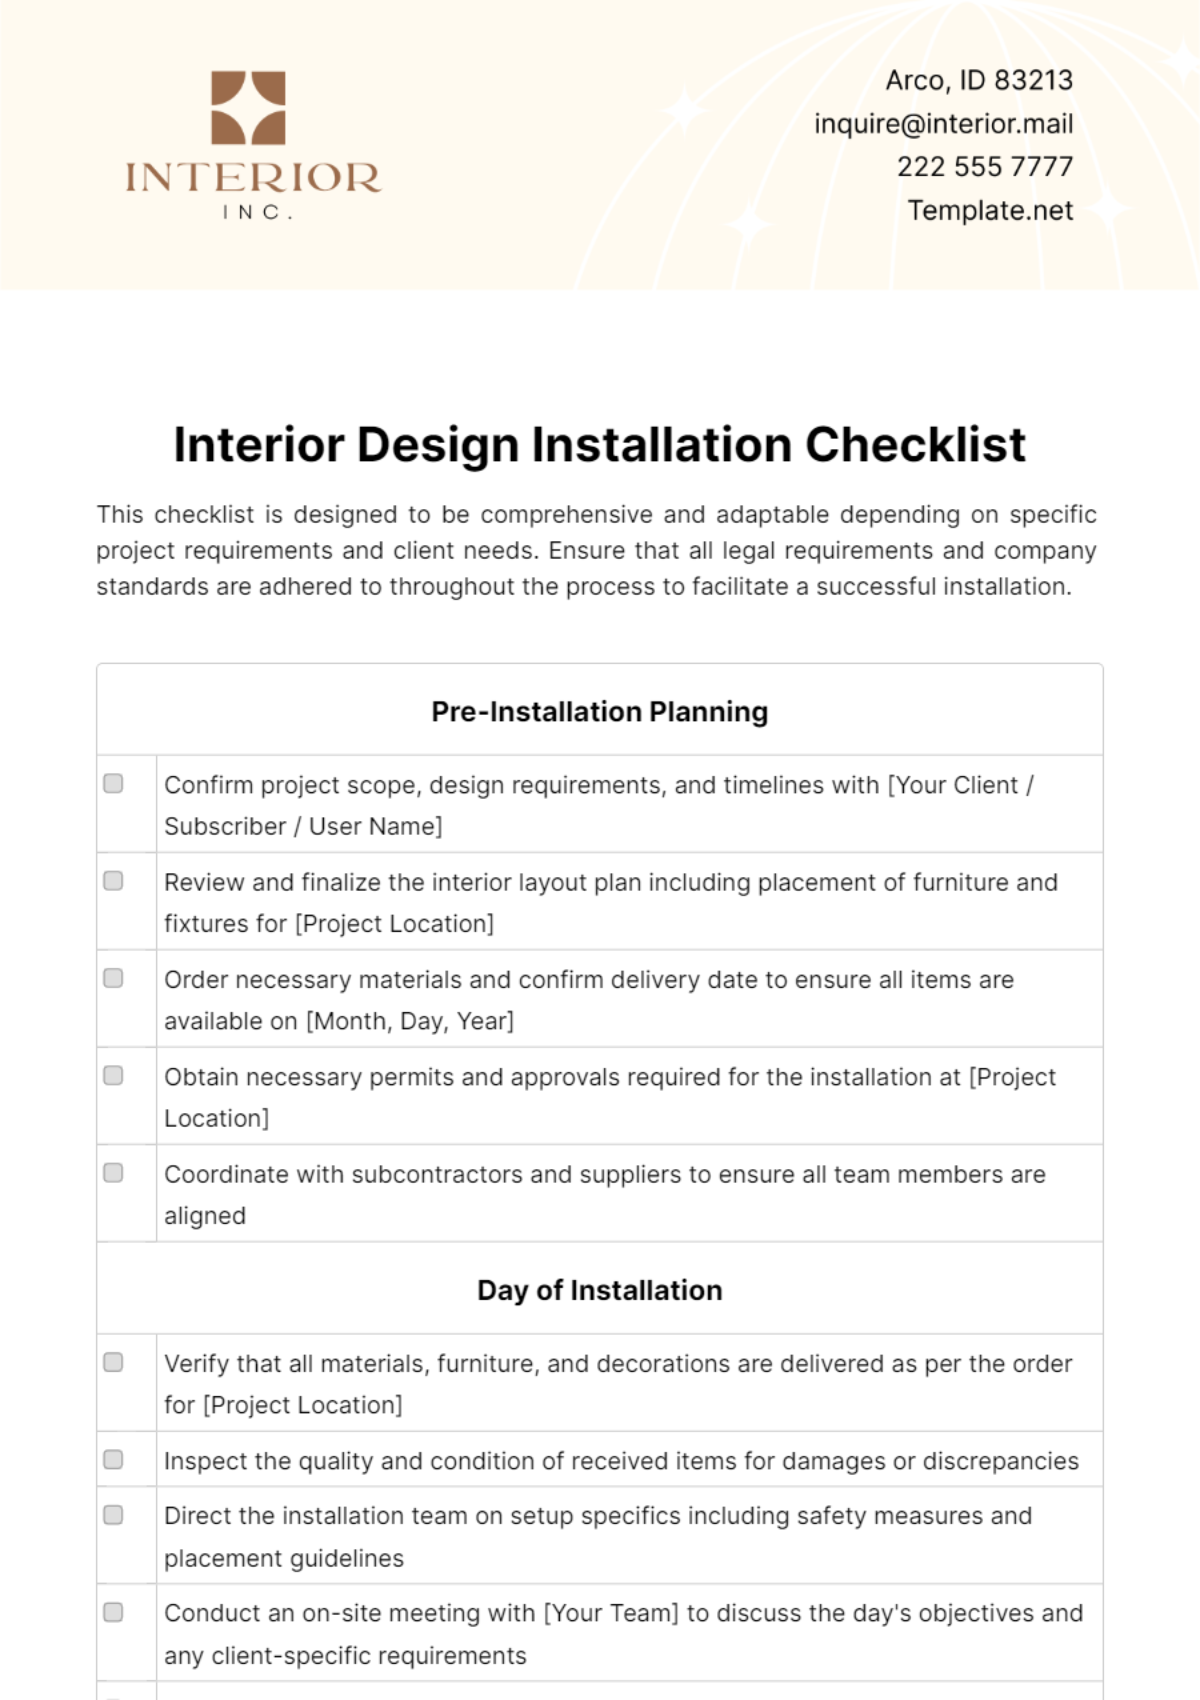 Free Interior Design Installation Checklist Template